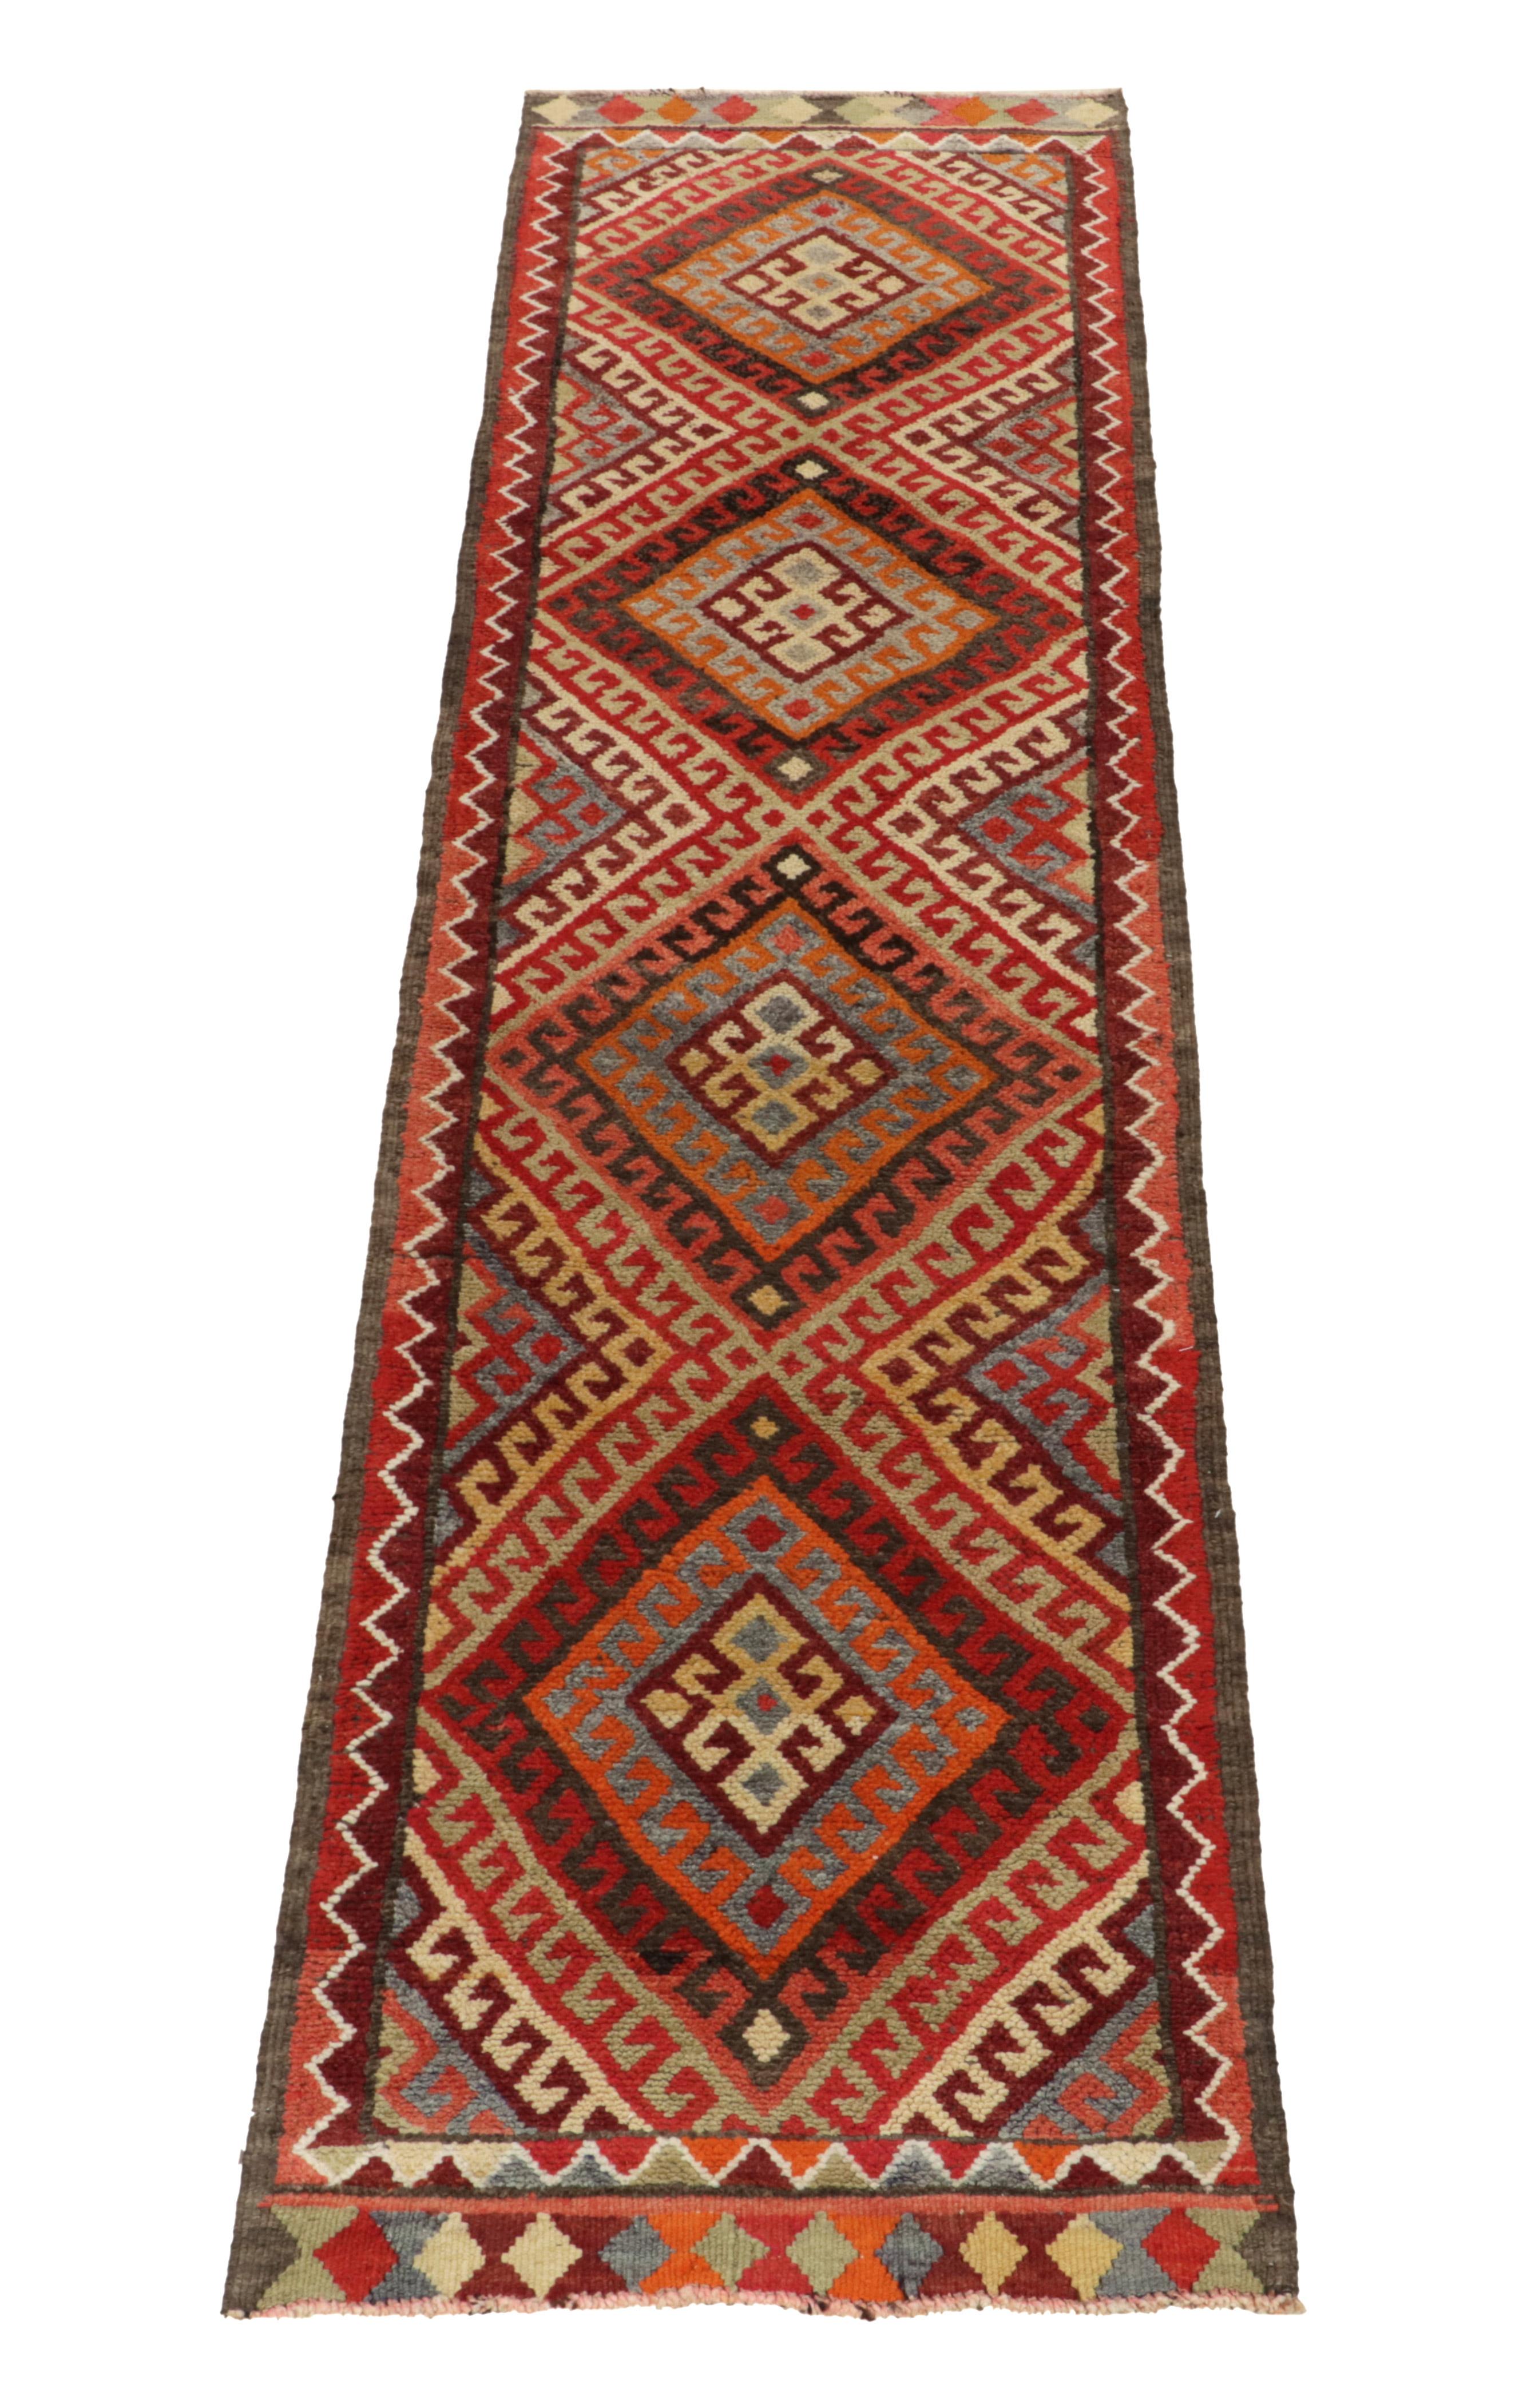 Turkish 1950s Vintage Tribal Runner in Red Orange Brown Geometric Pattern by Rug & Kilim For Sale